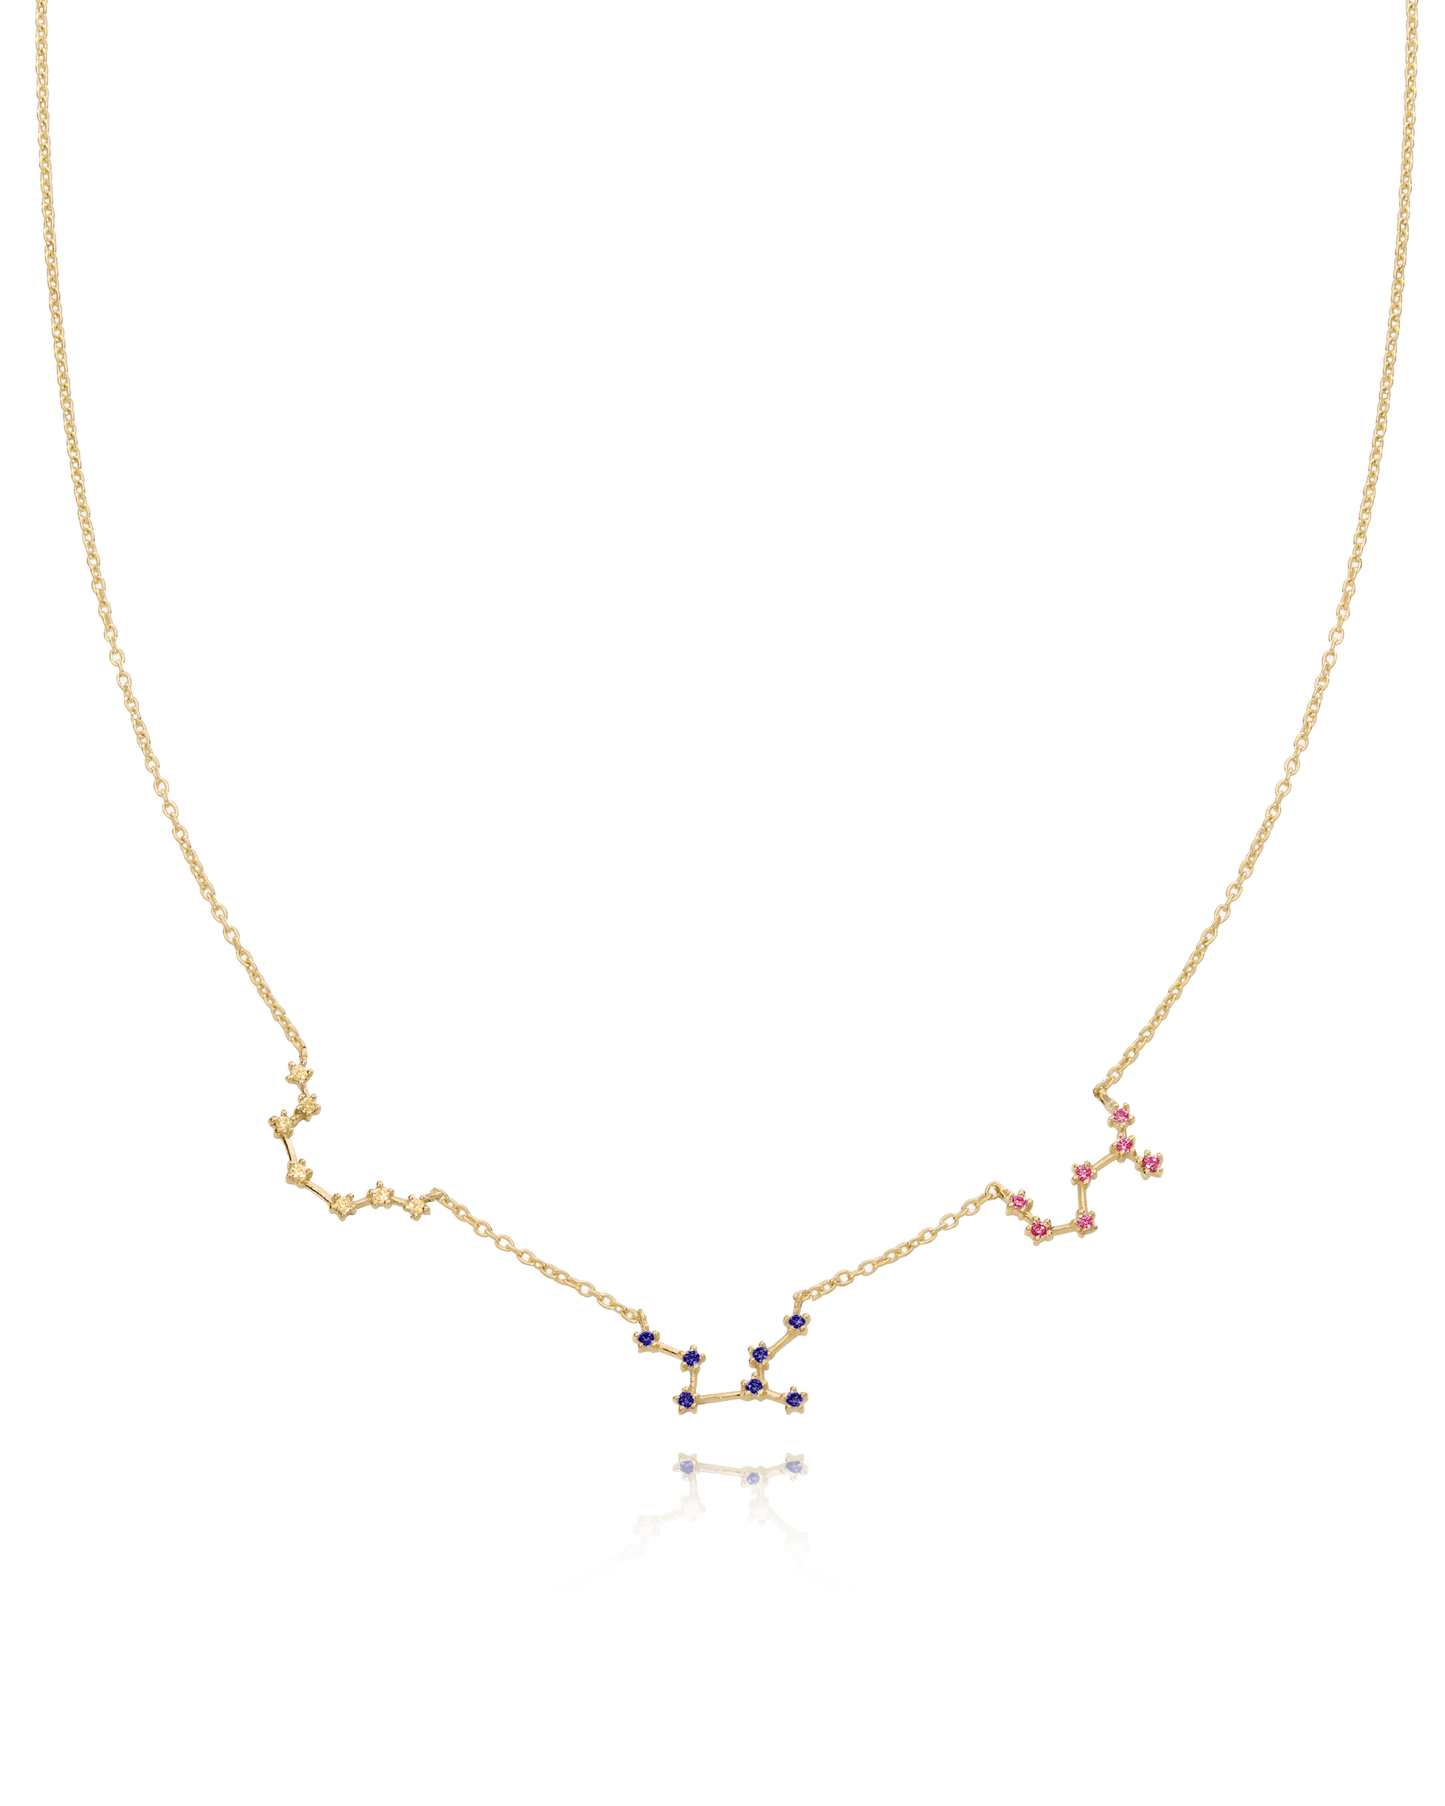 Constellation Birthstone Necklace - 18K Gold Vermeil Necklaces magal-dev 1 Constellation 16" 